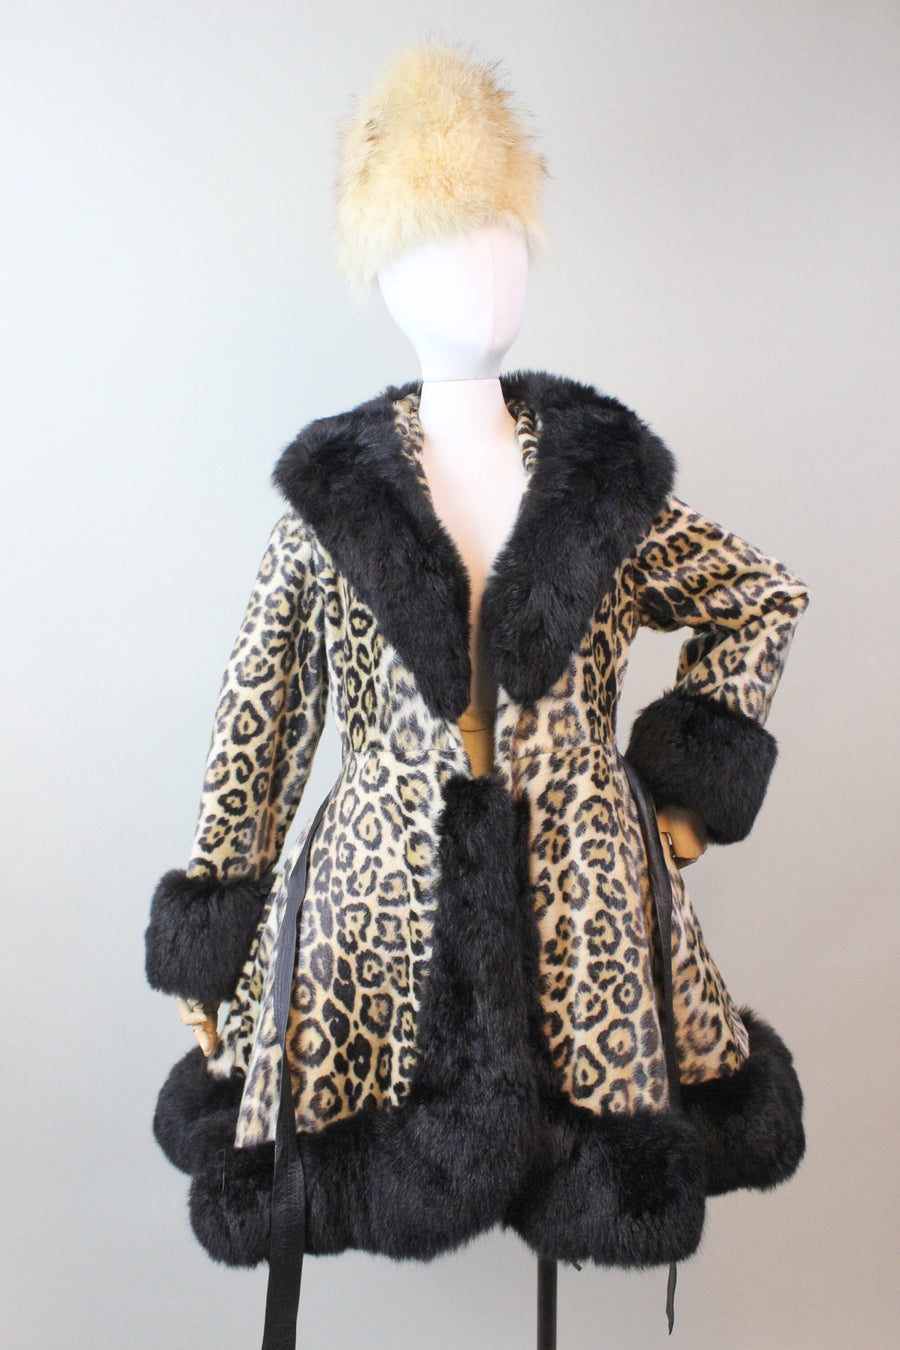 1970s Robert Meshekoff LEOPARD PRINCESS fur coat small medium | new fall